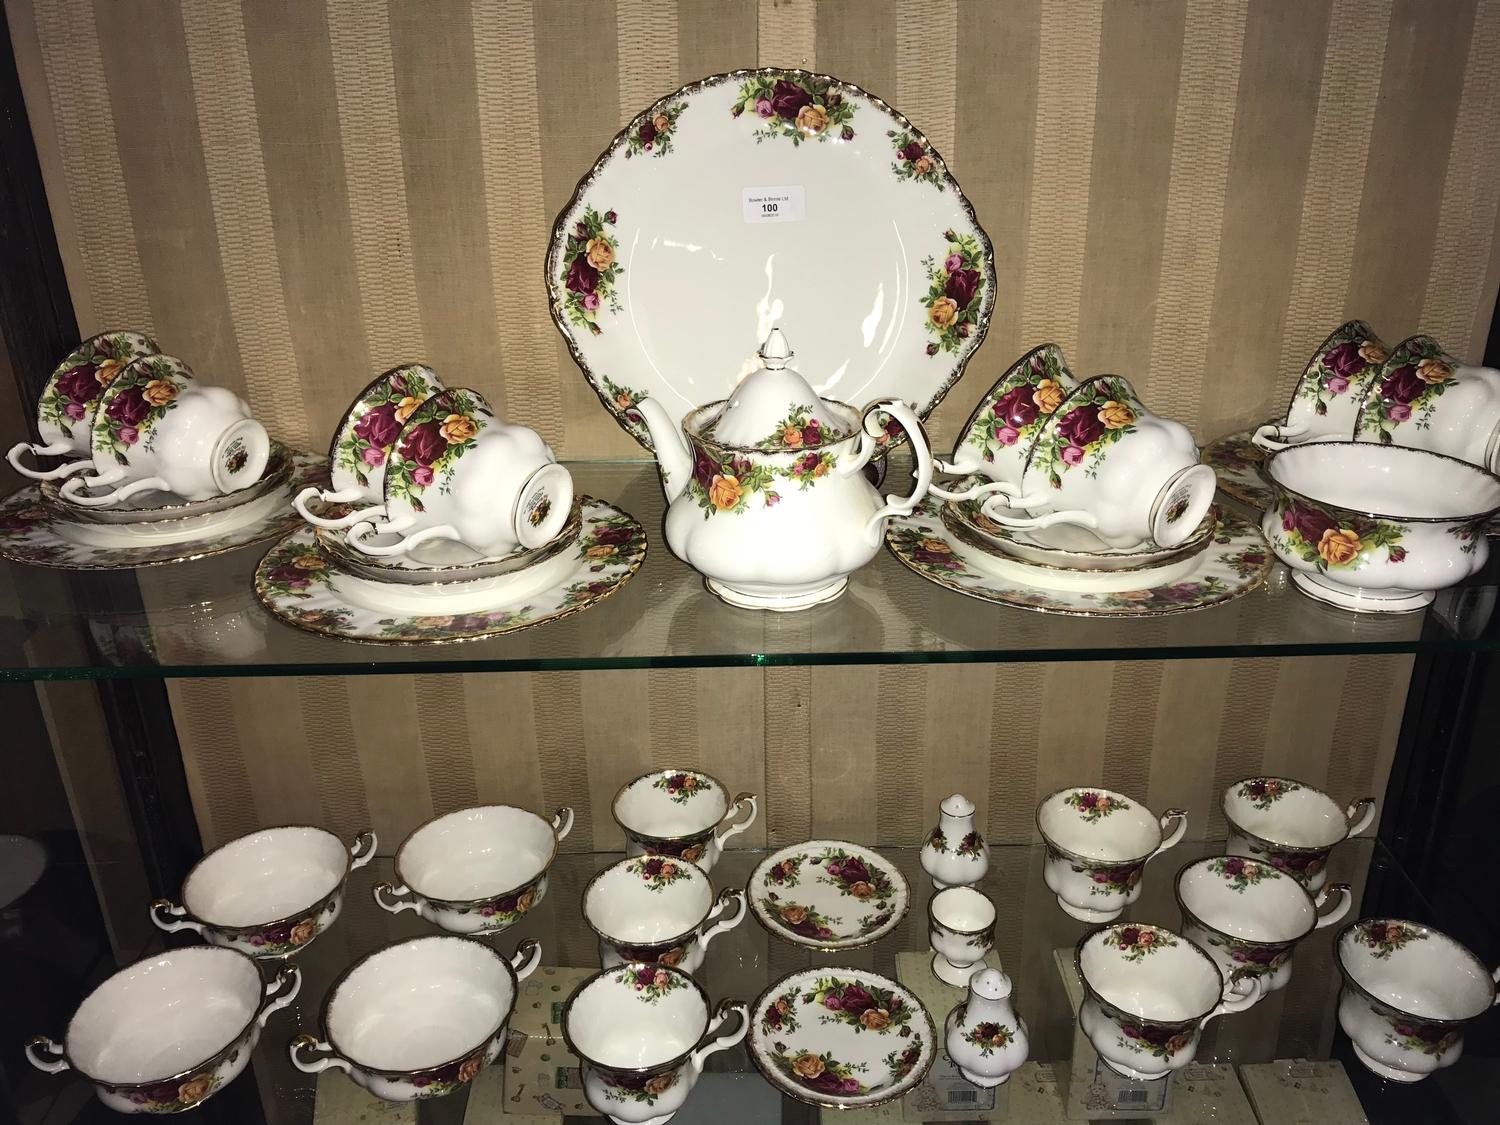 39 Piece Royal Albert old country roses tea set, tea pot, Cruet set & cake plate - Image 2 of 2